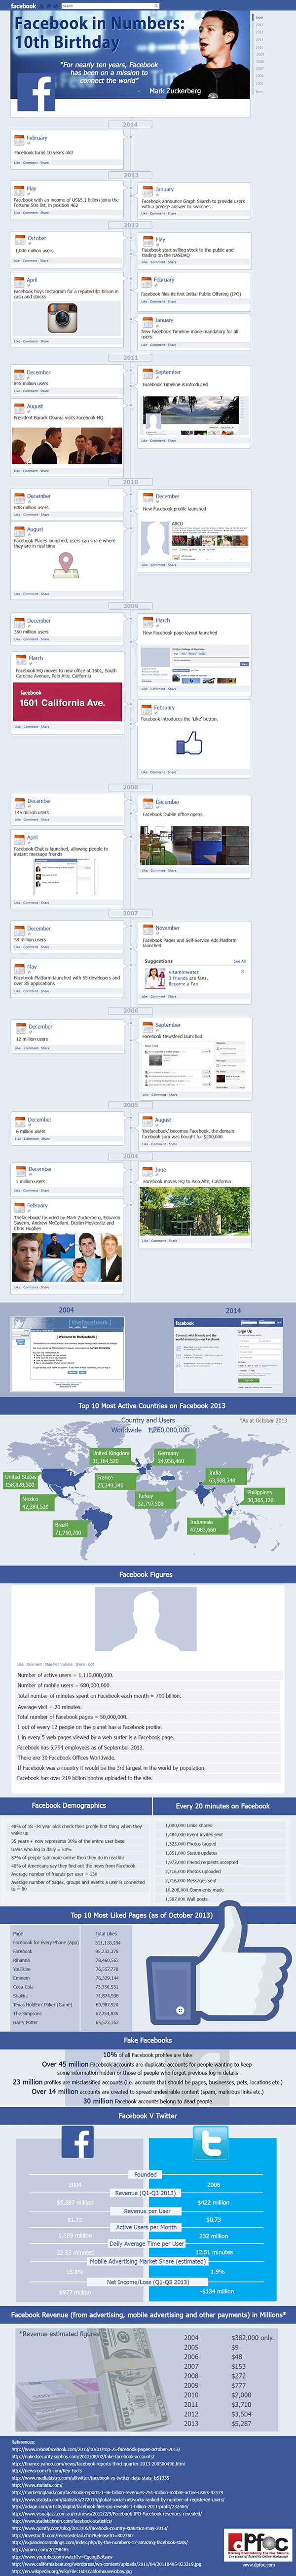 I 10 anni di Facebook in un'infografica